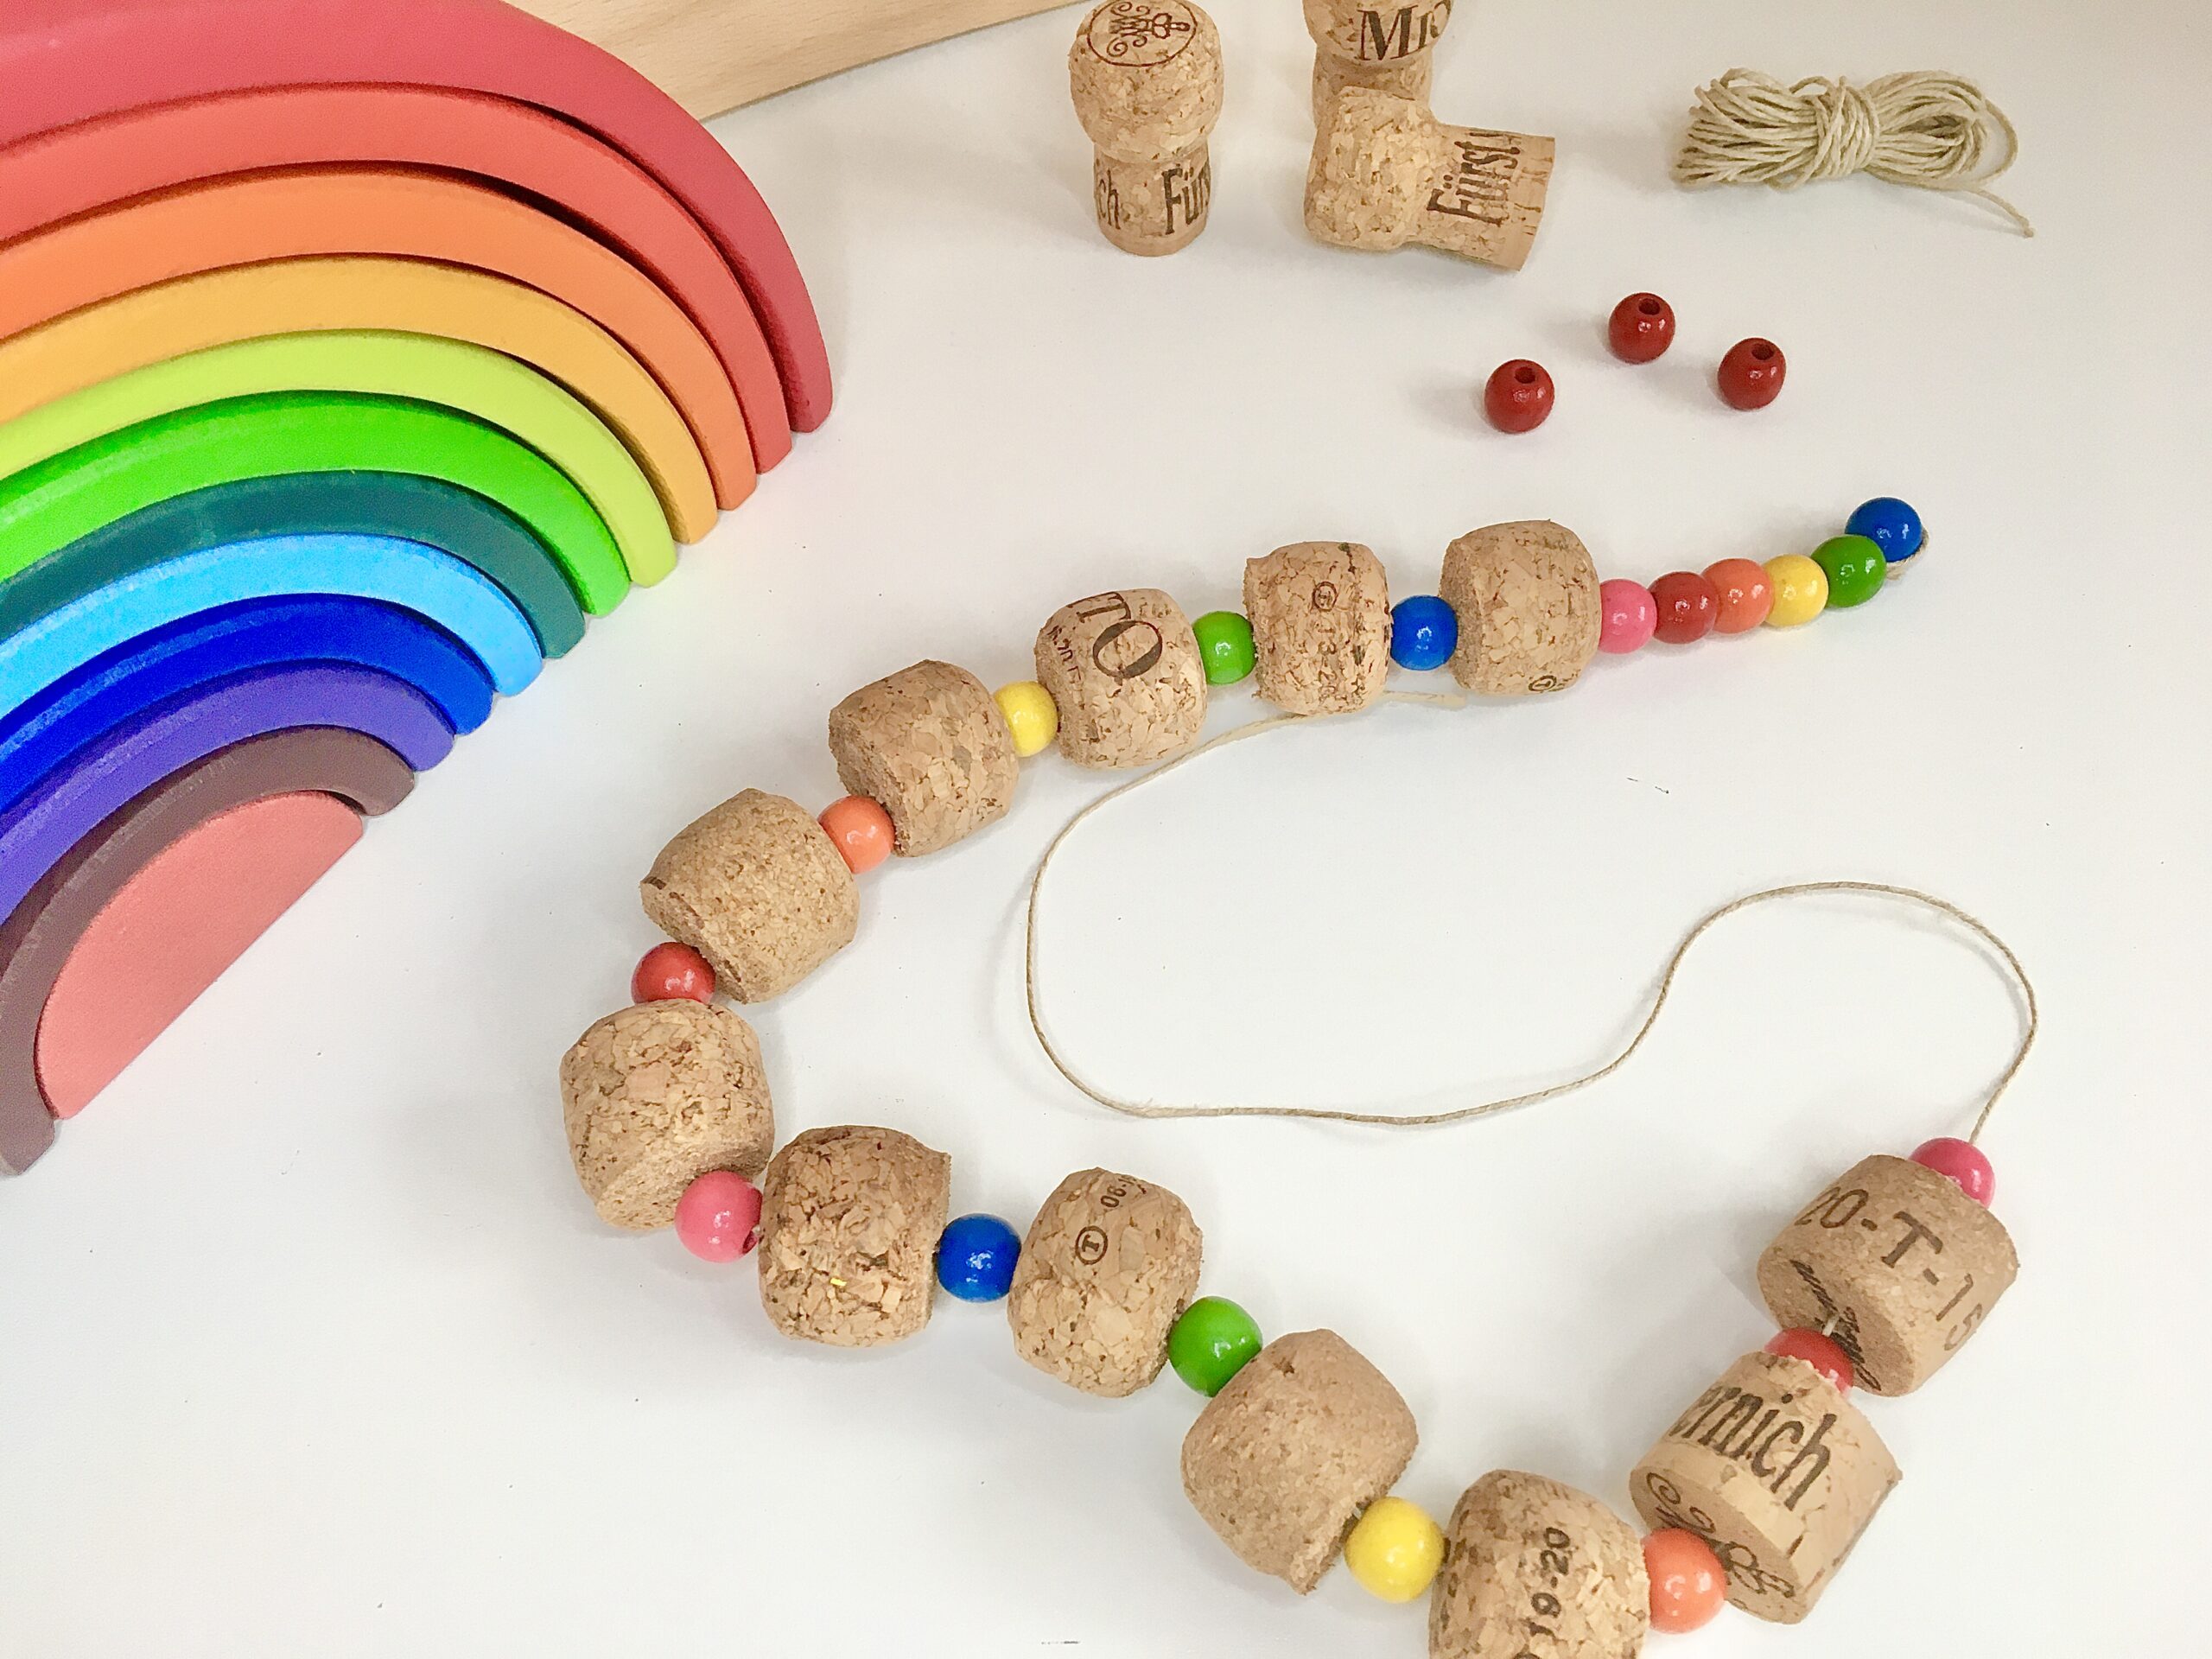  Regenbogen-Schlange aus Korken, Perlen, Spielzeug, #bastelnmitkindern #upcycling bunt, fantasiewerk.ch 